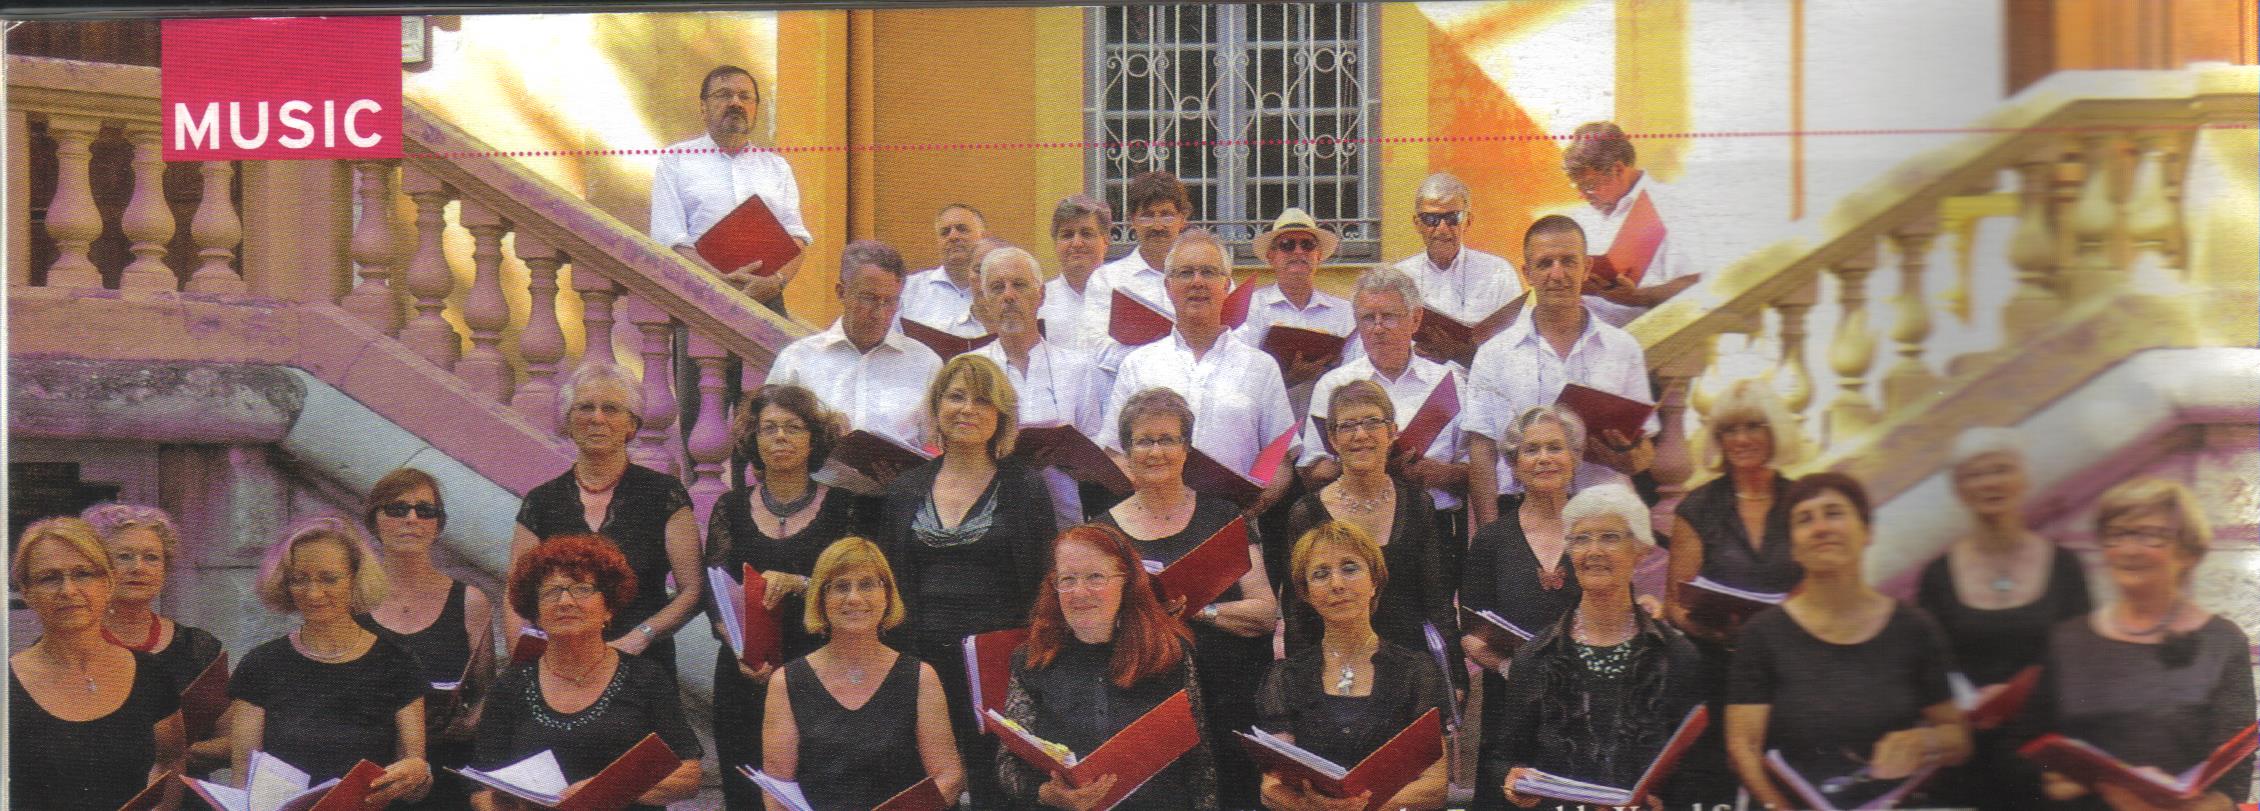 Choir photo, Vence Mairie